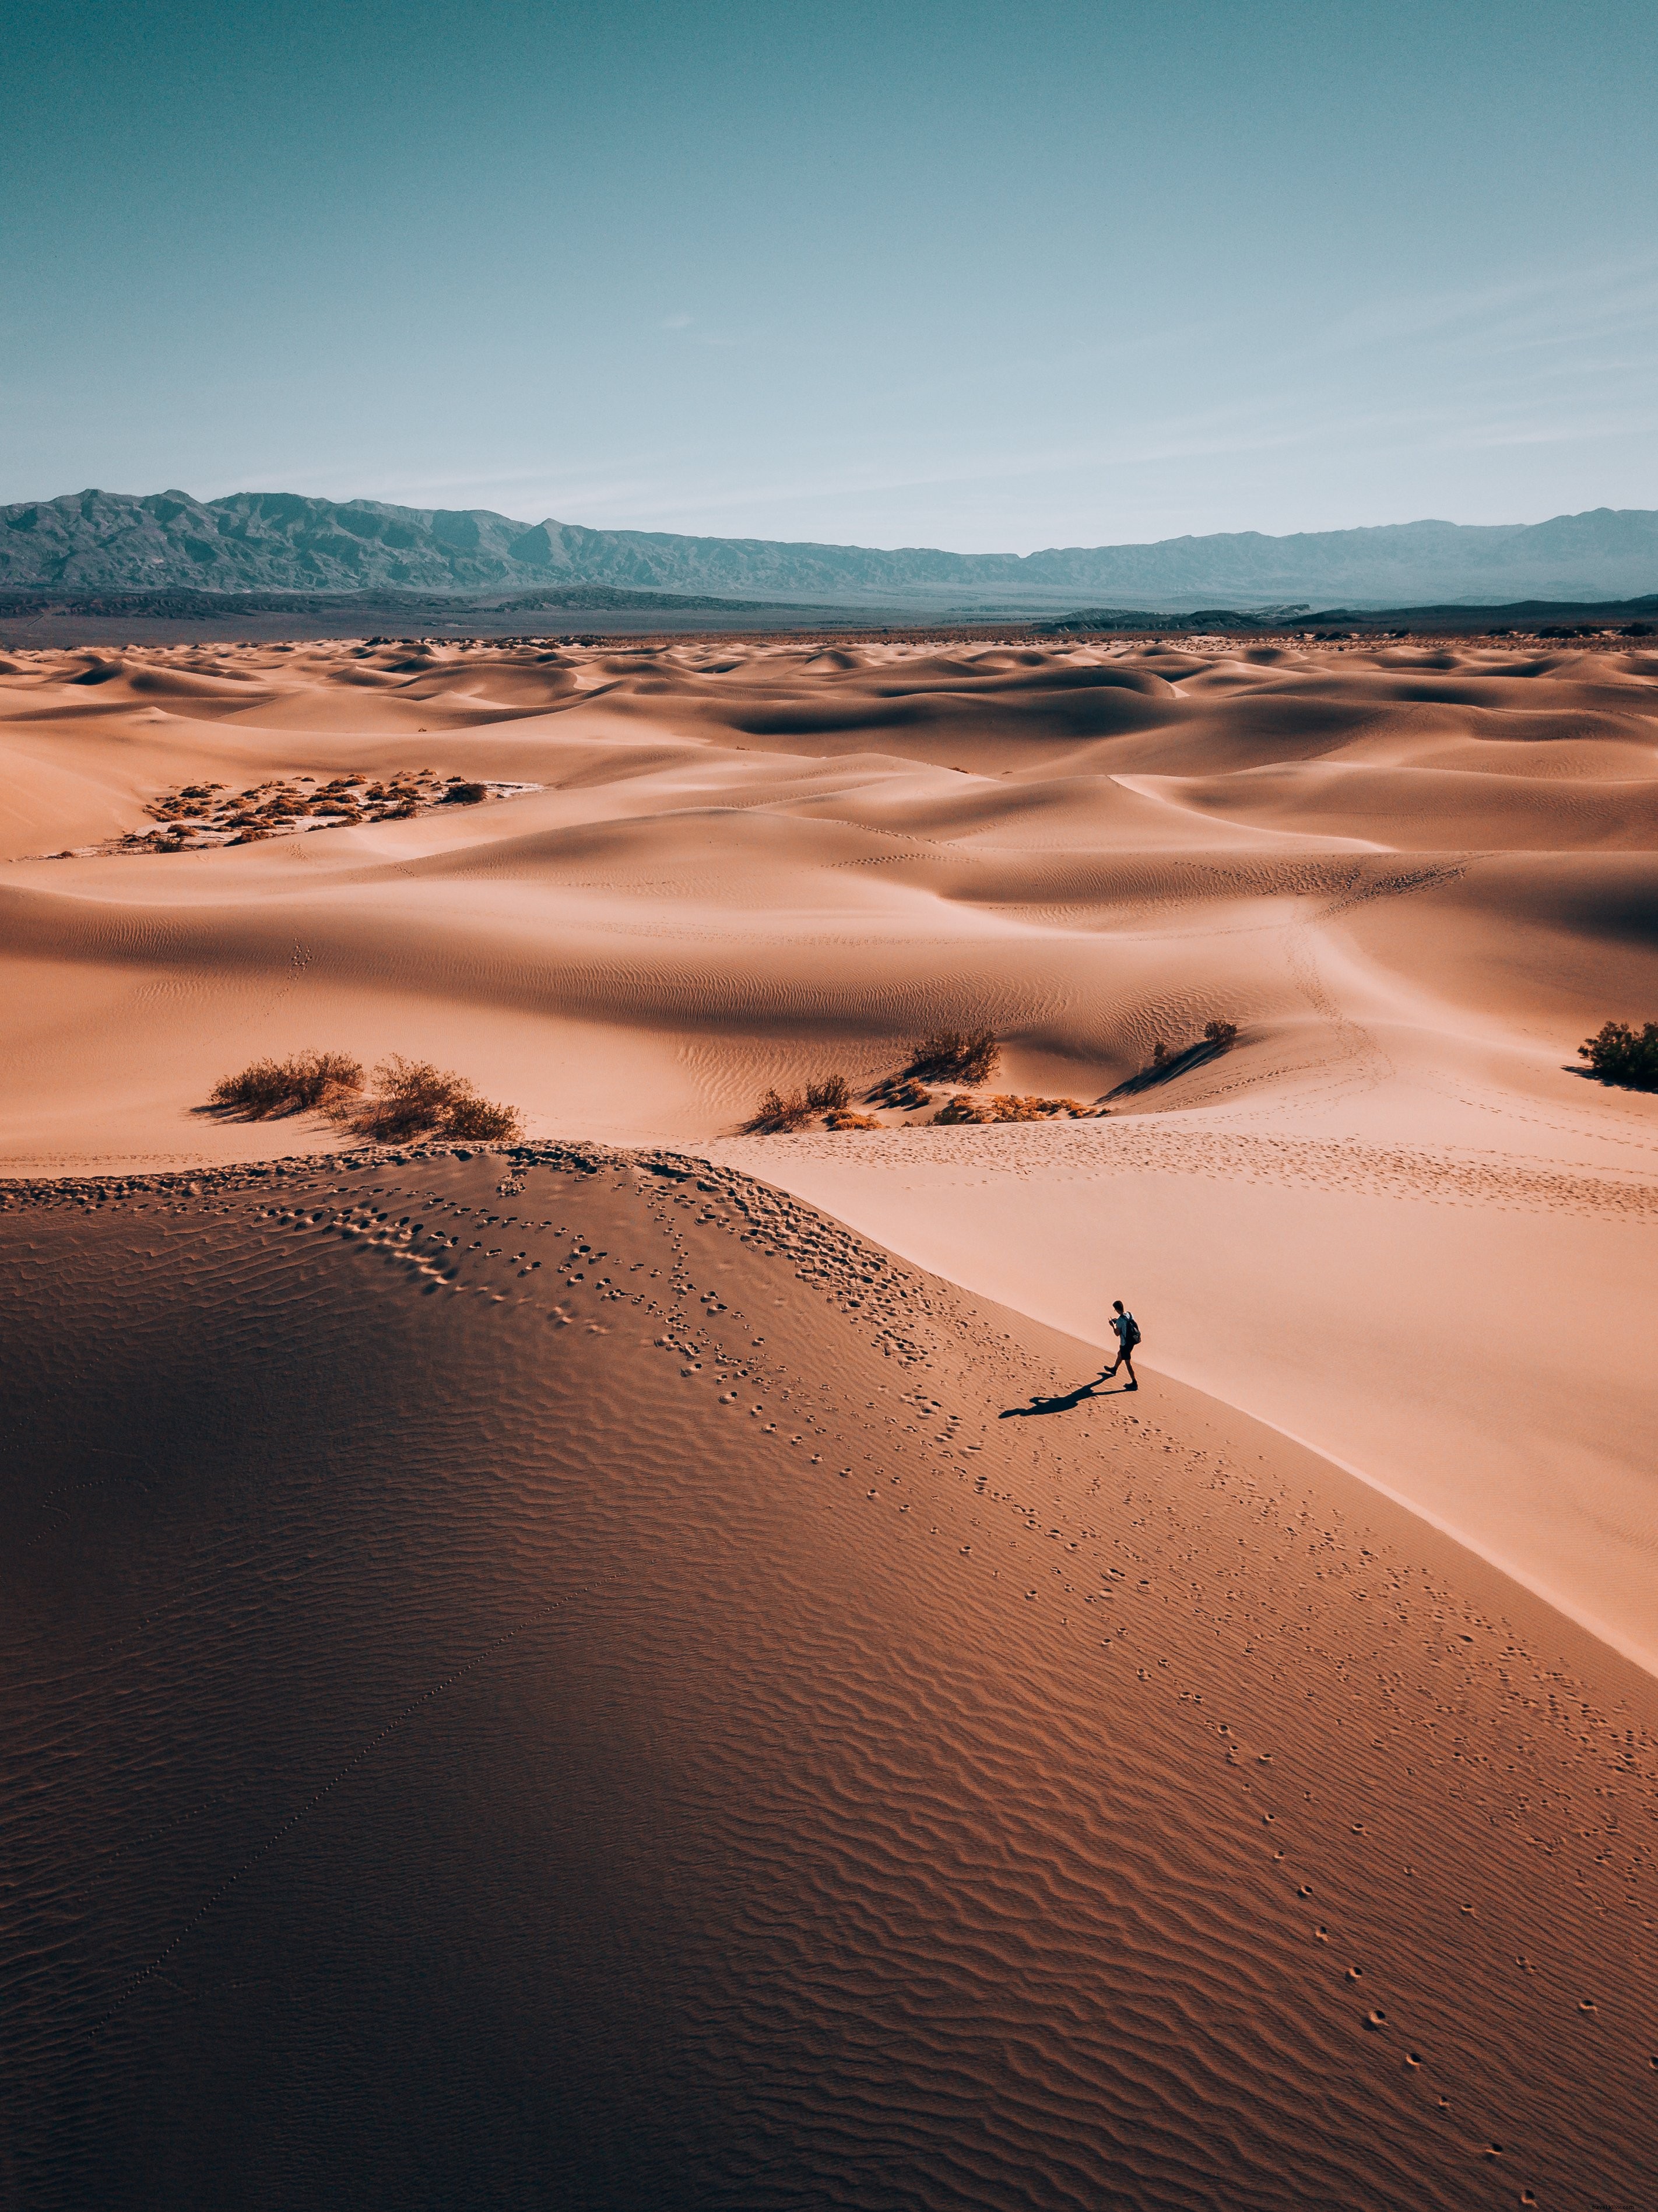 砂漠の土地の孤独な放浪者写真